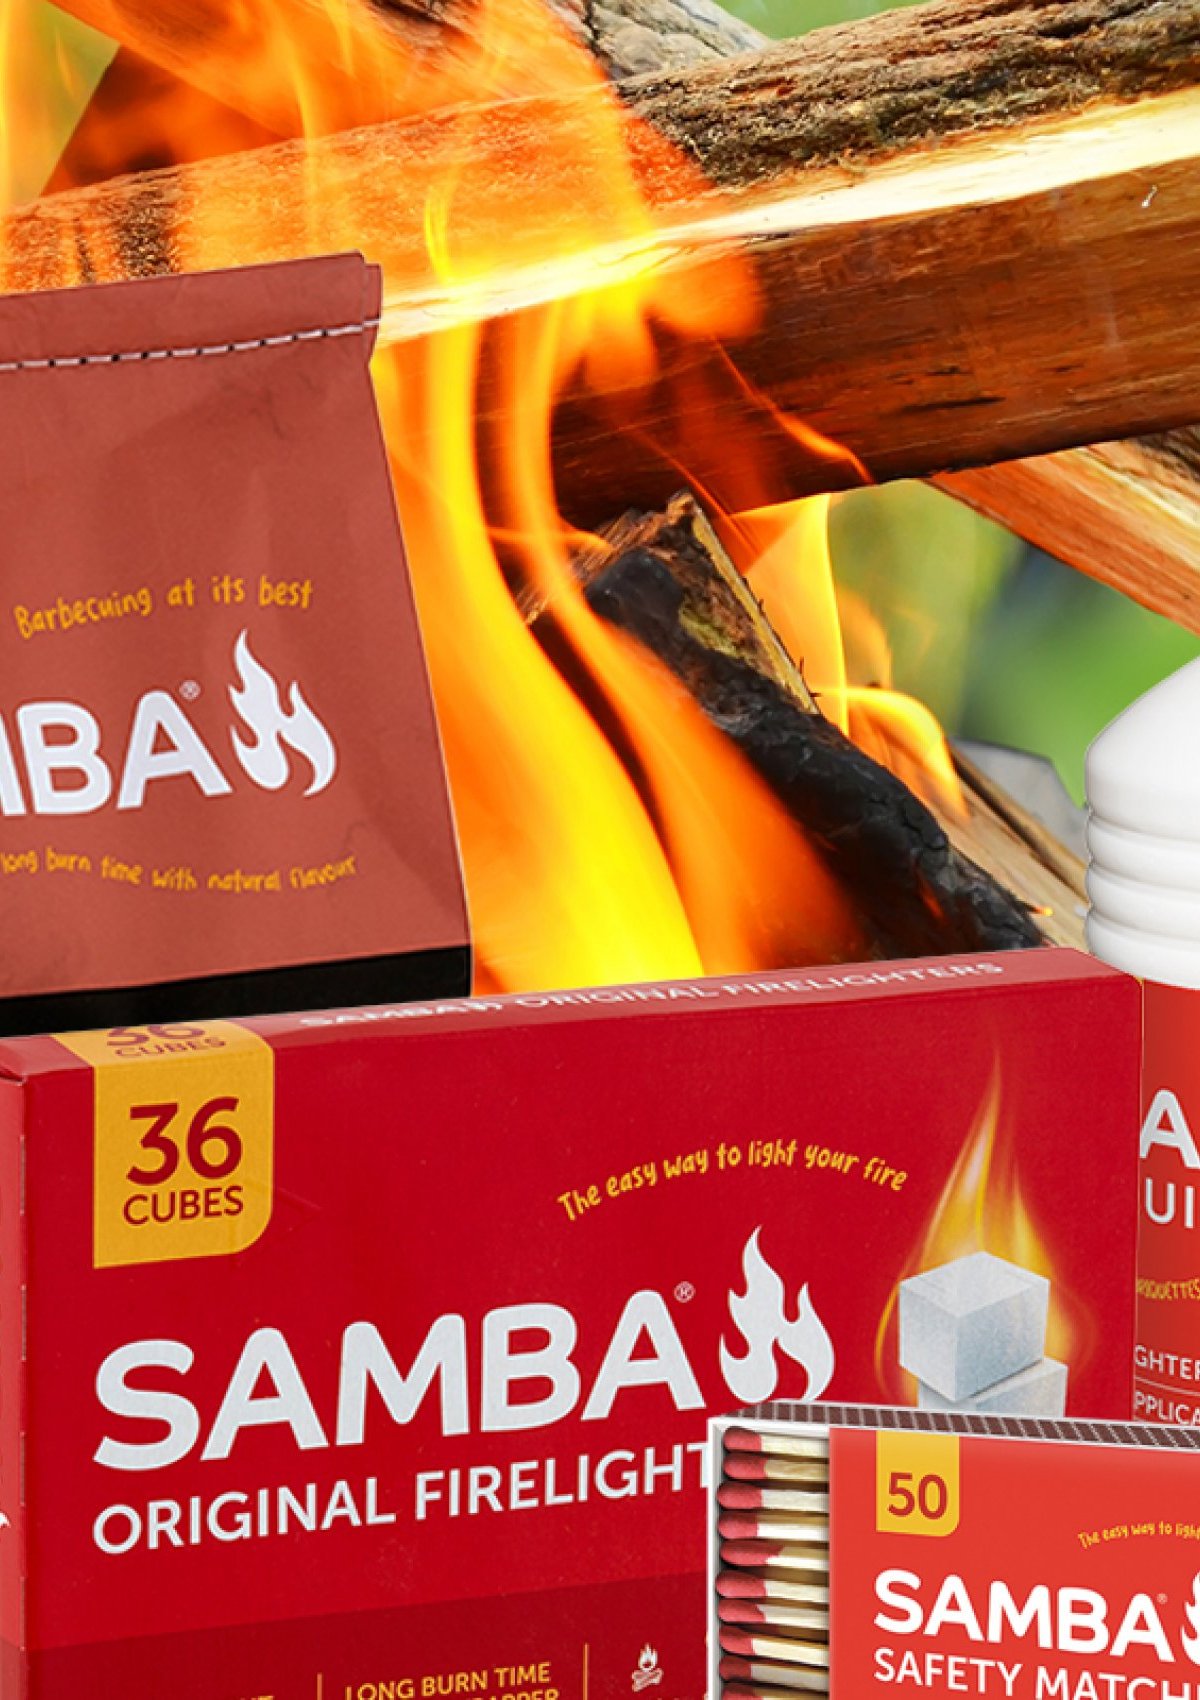 Are Samba products environmentally friendly?